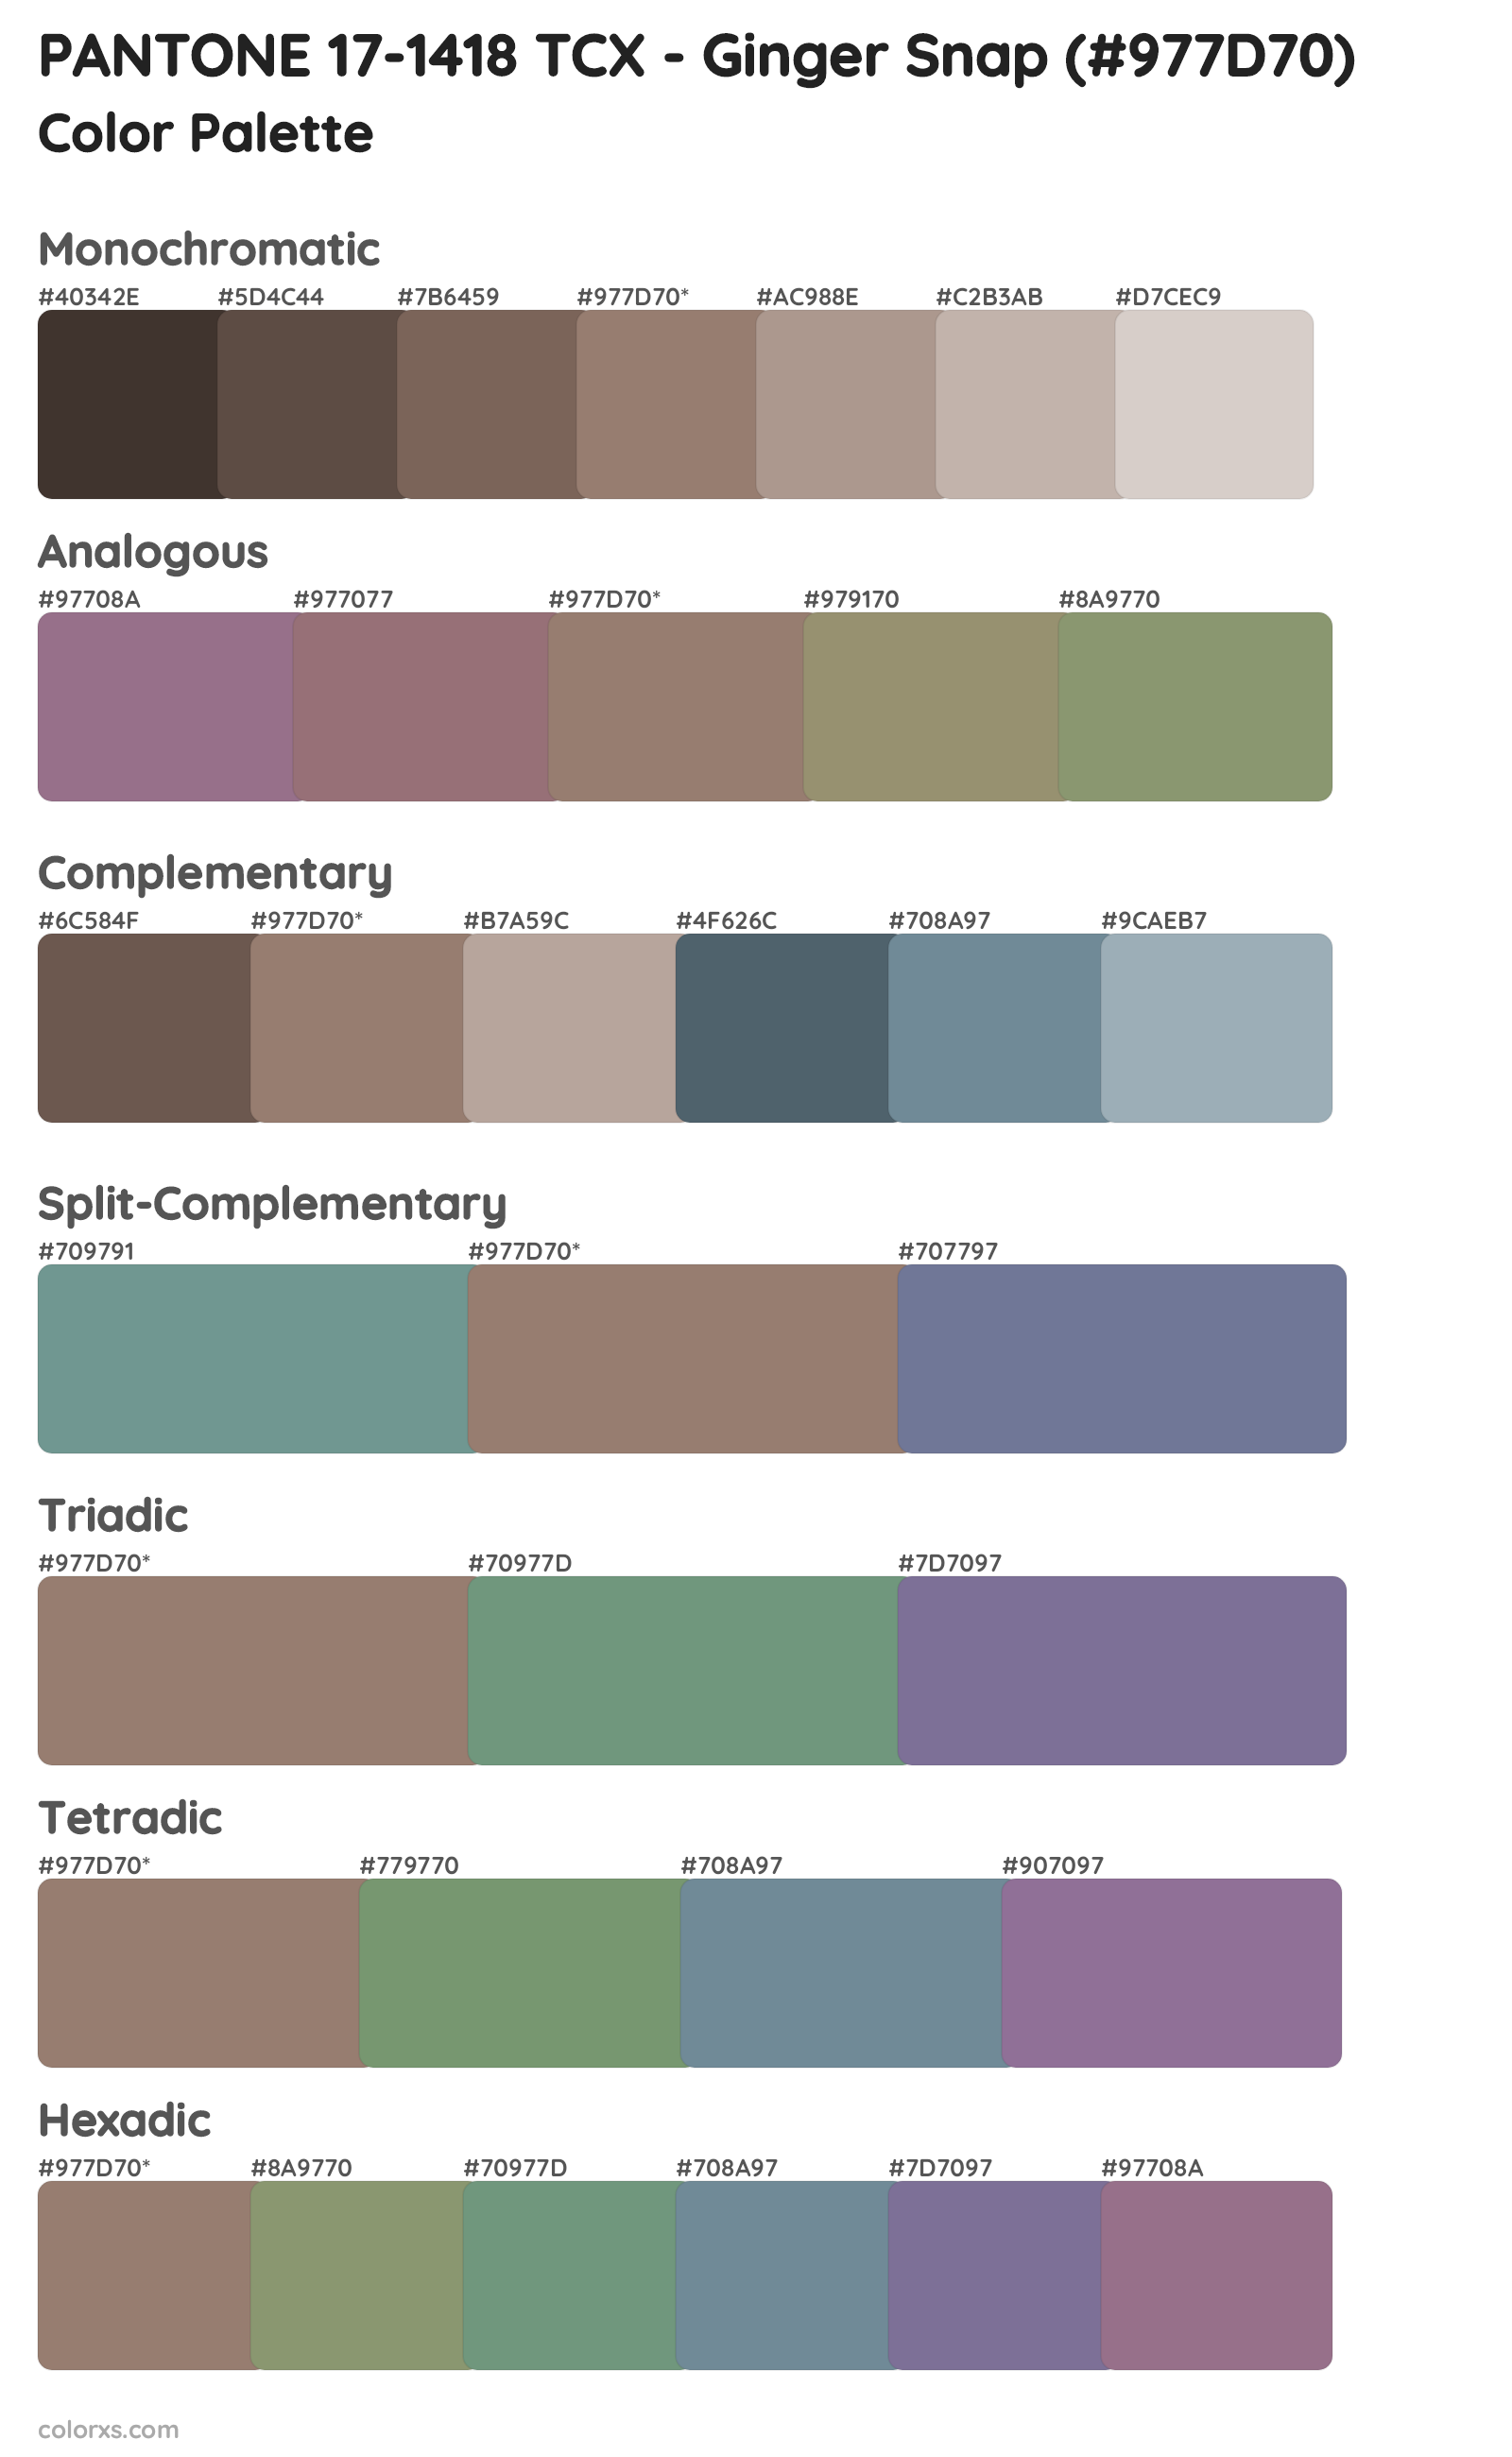 PANTONE 17-1418 TCX - Ginger Snap Color Scheme Palettes